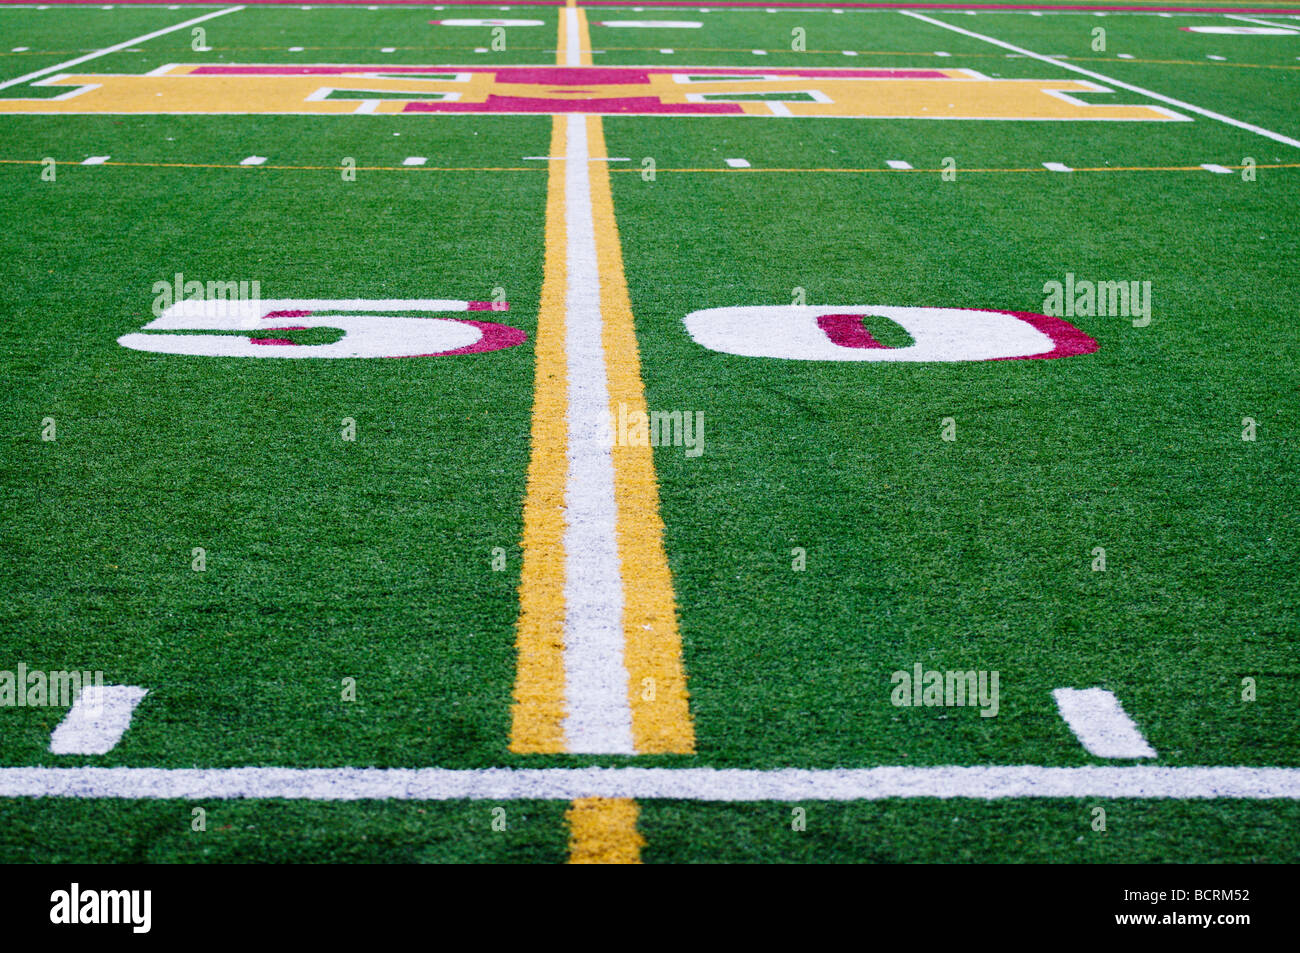 50-Yard-Linie auf einem amerikanischen High-School-Fußball-Spielfeld. Stockfoto